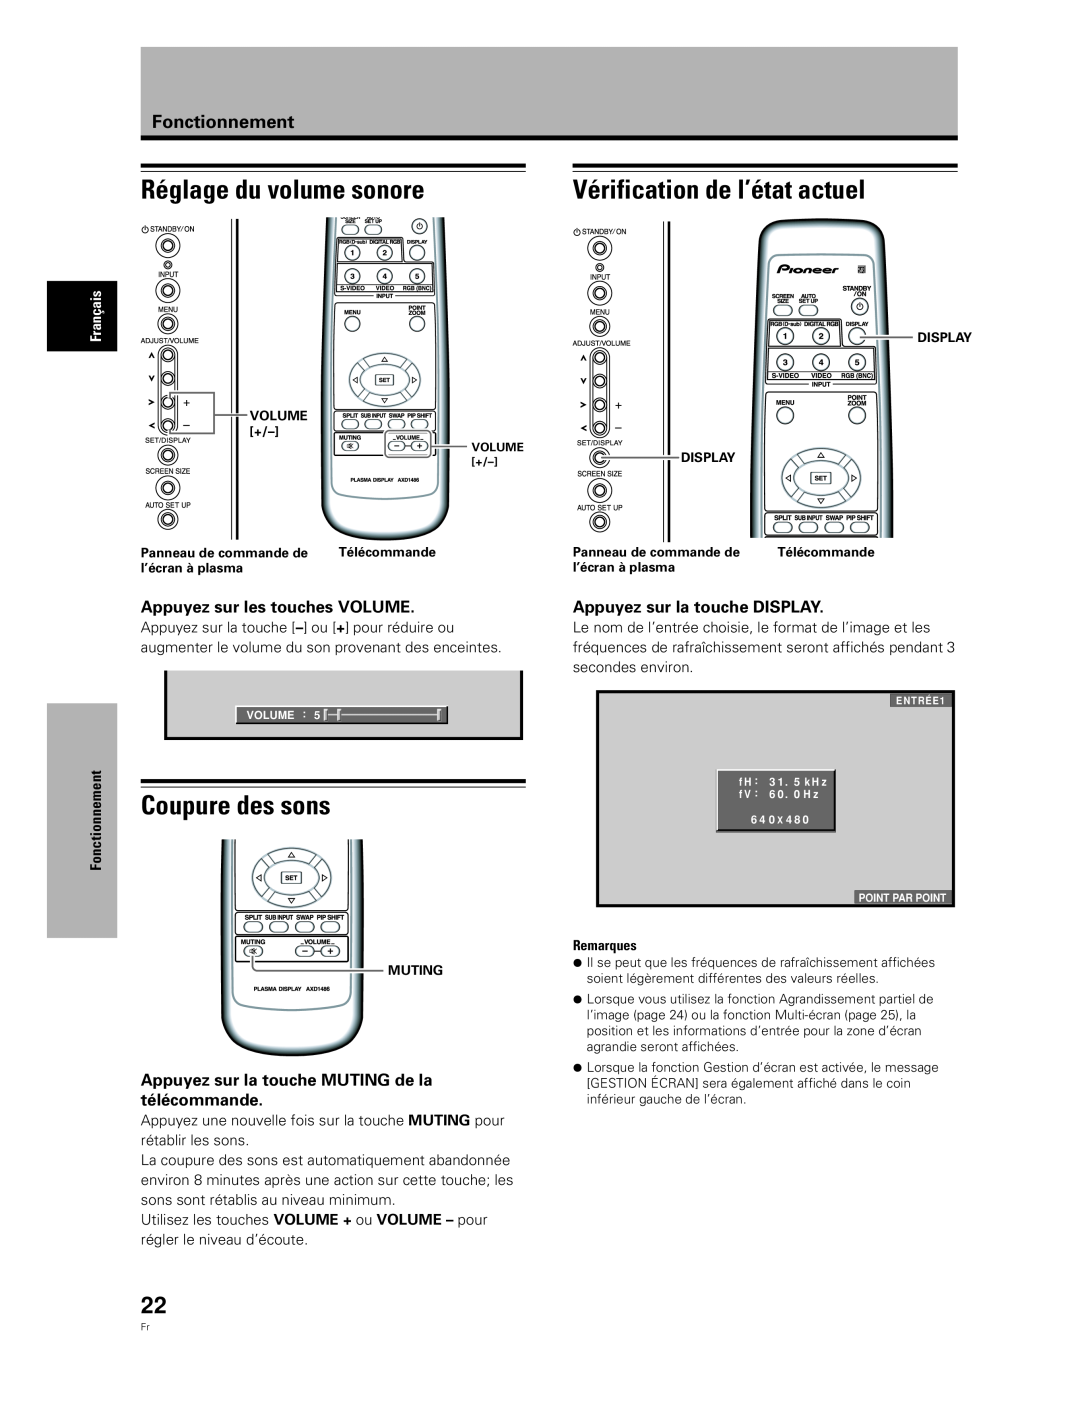 Pioneer PDA-5004 Réglage du volume sonore, Vérification de l’état actuel, Coupure des sons, Appuyez sur les touches VOLUME 